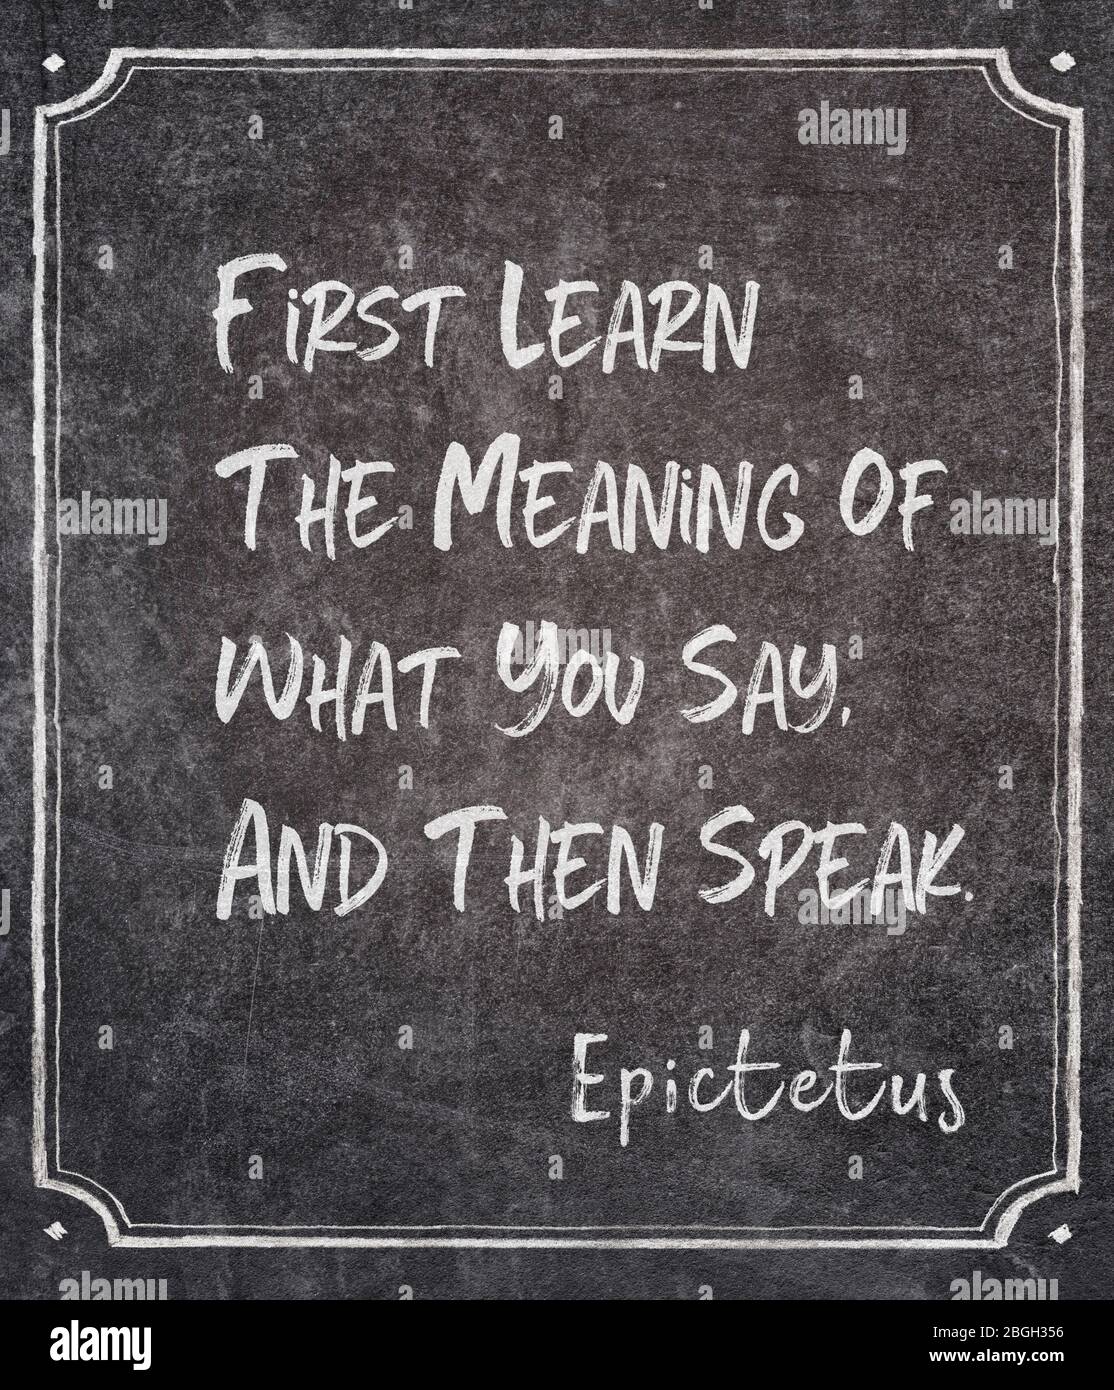 Prima imparate il significato di ciò che dite, e poi parlate - antico filosofo greco Epictetus citazione scritto su lavagna incorniciata Foto Stock